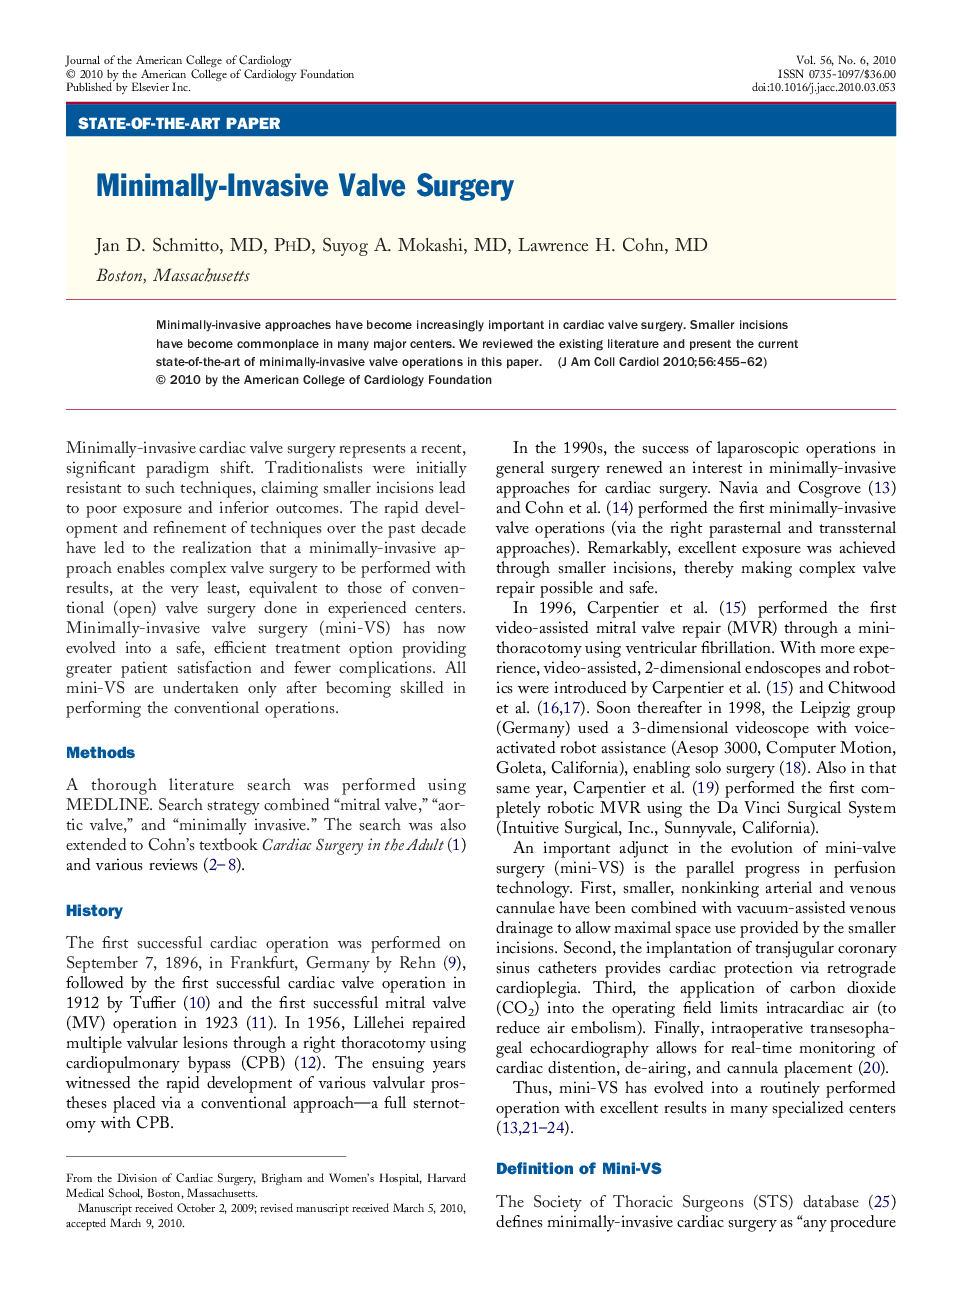 Minimally-Invasive Valve Surgery